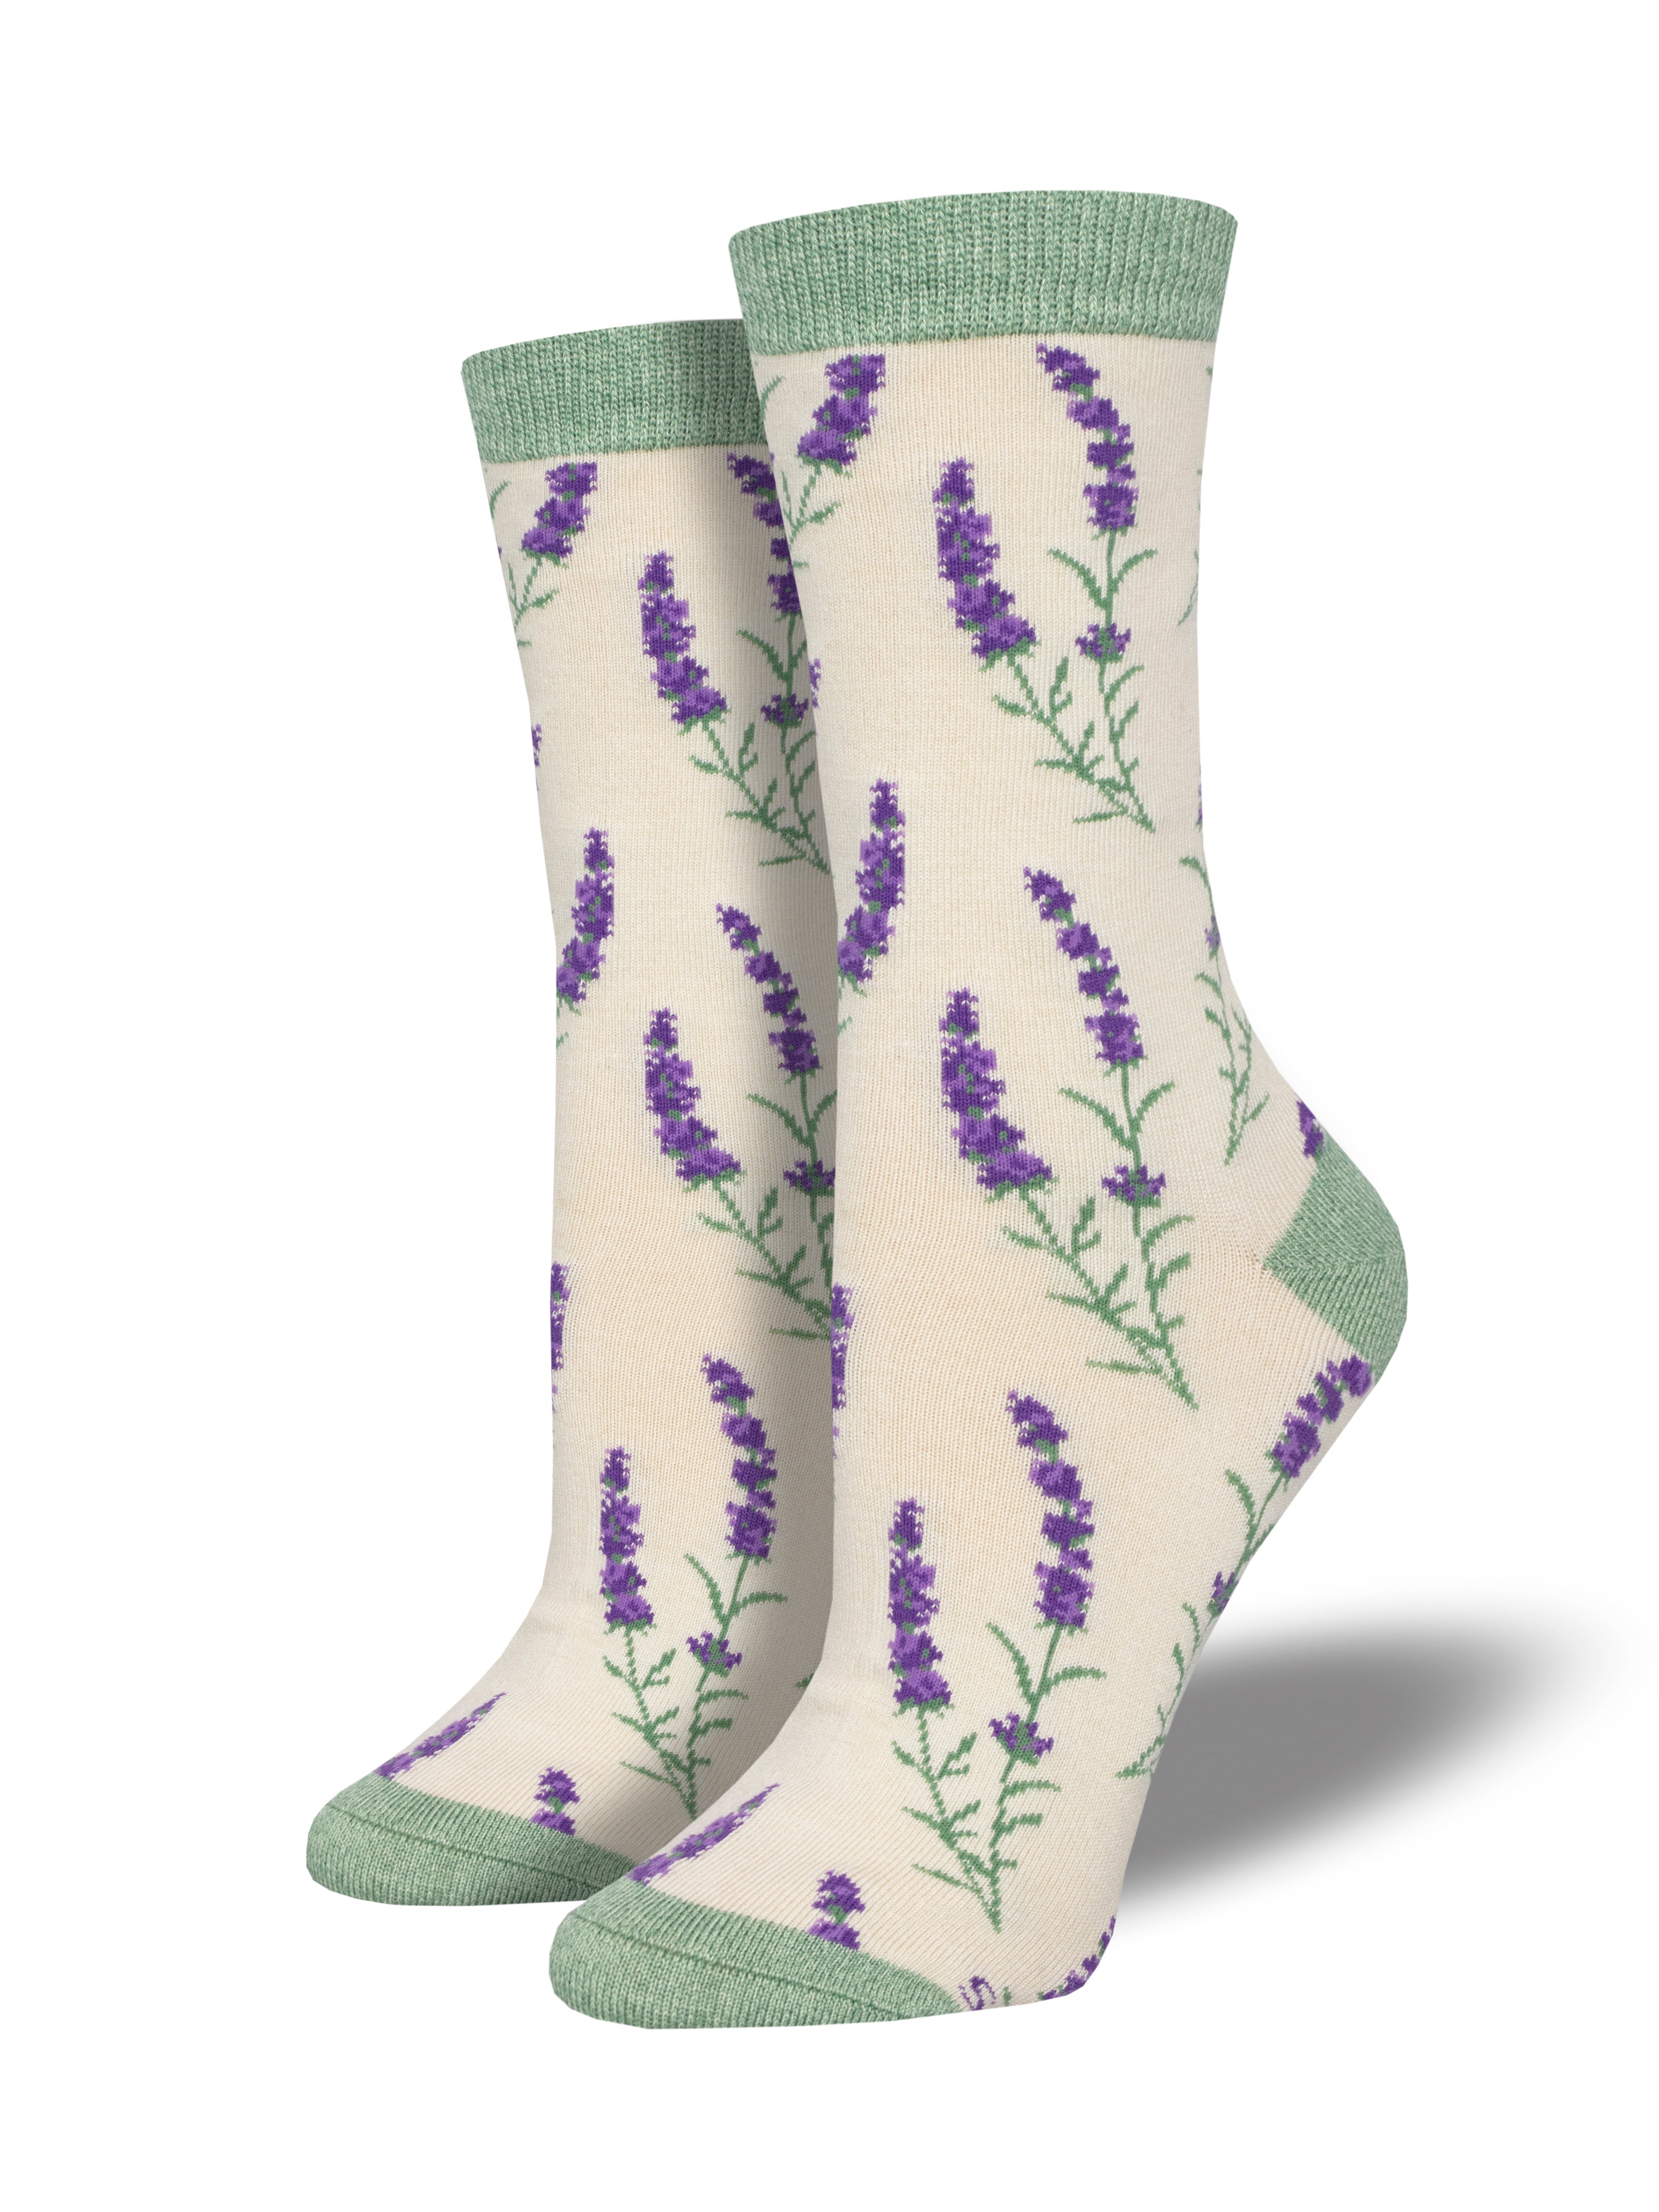 Women's Bamboo "Lovely Lavender" Socks